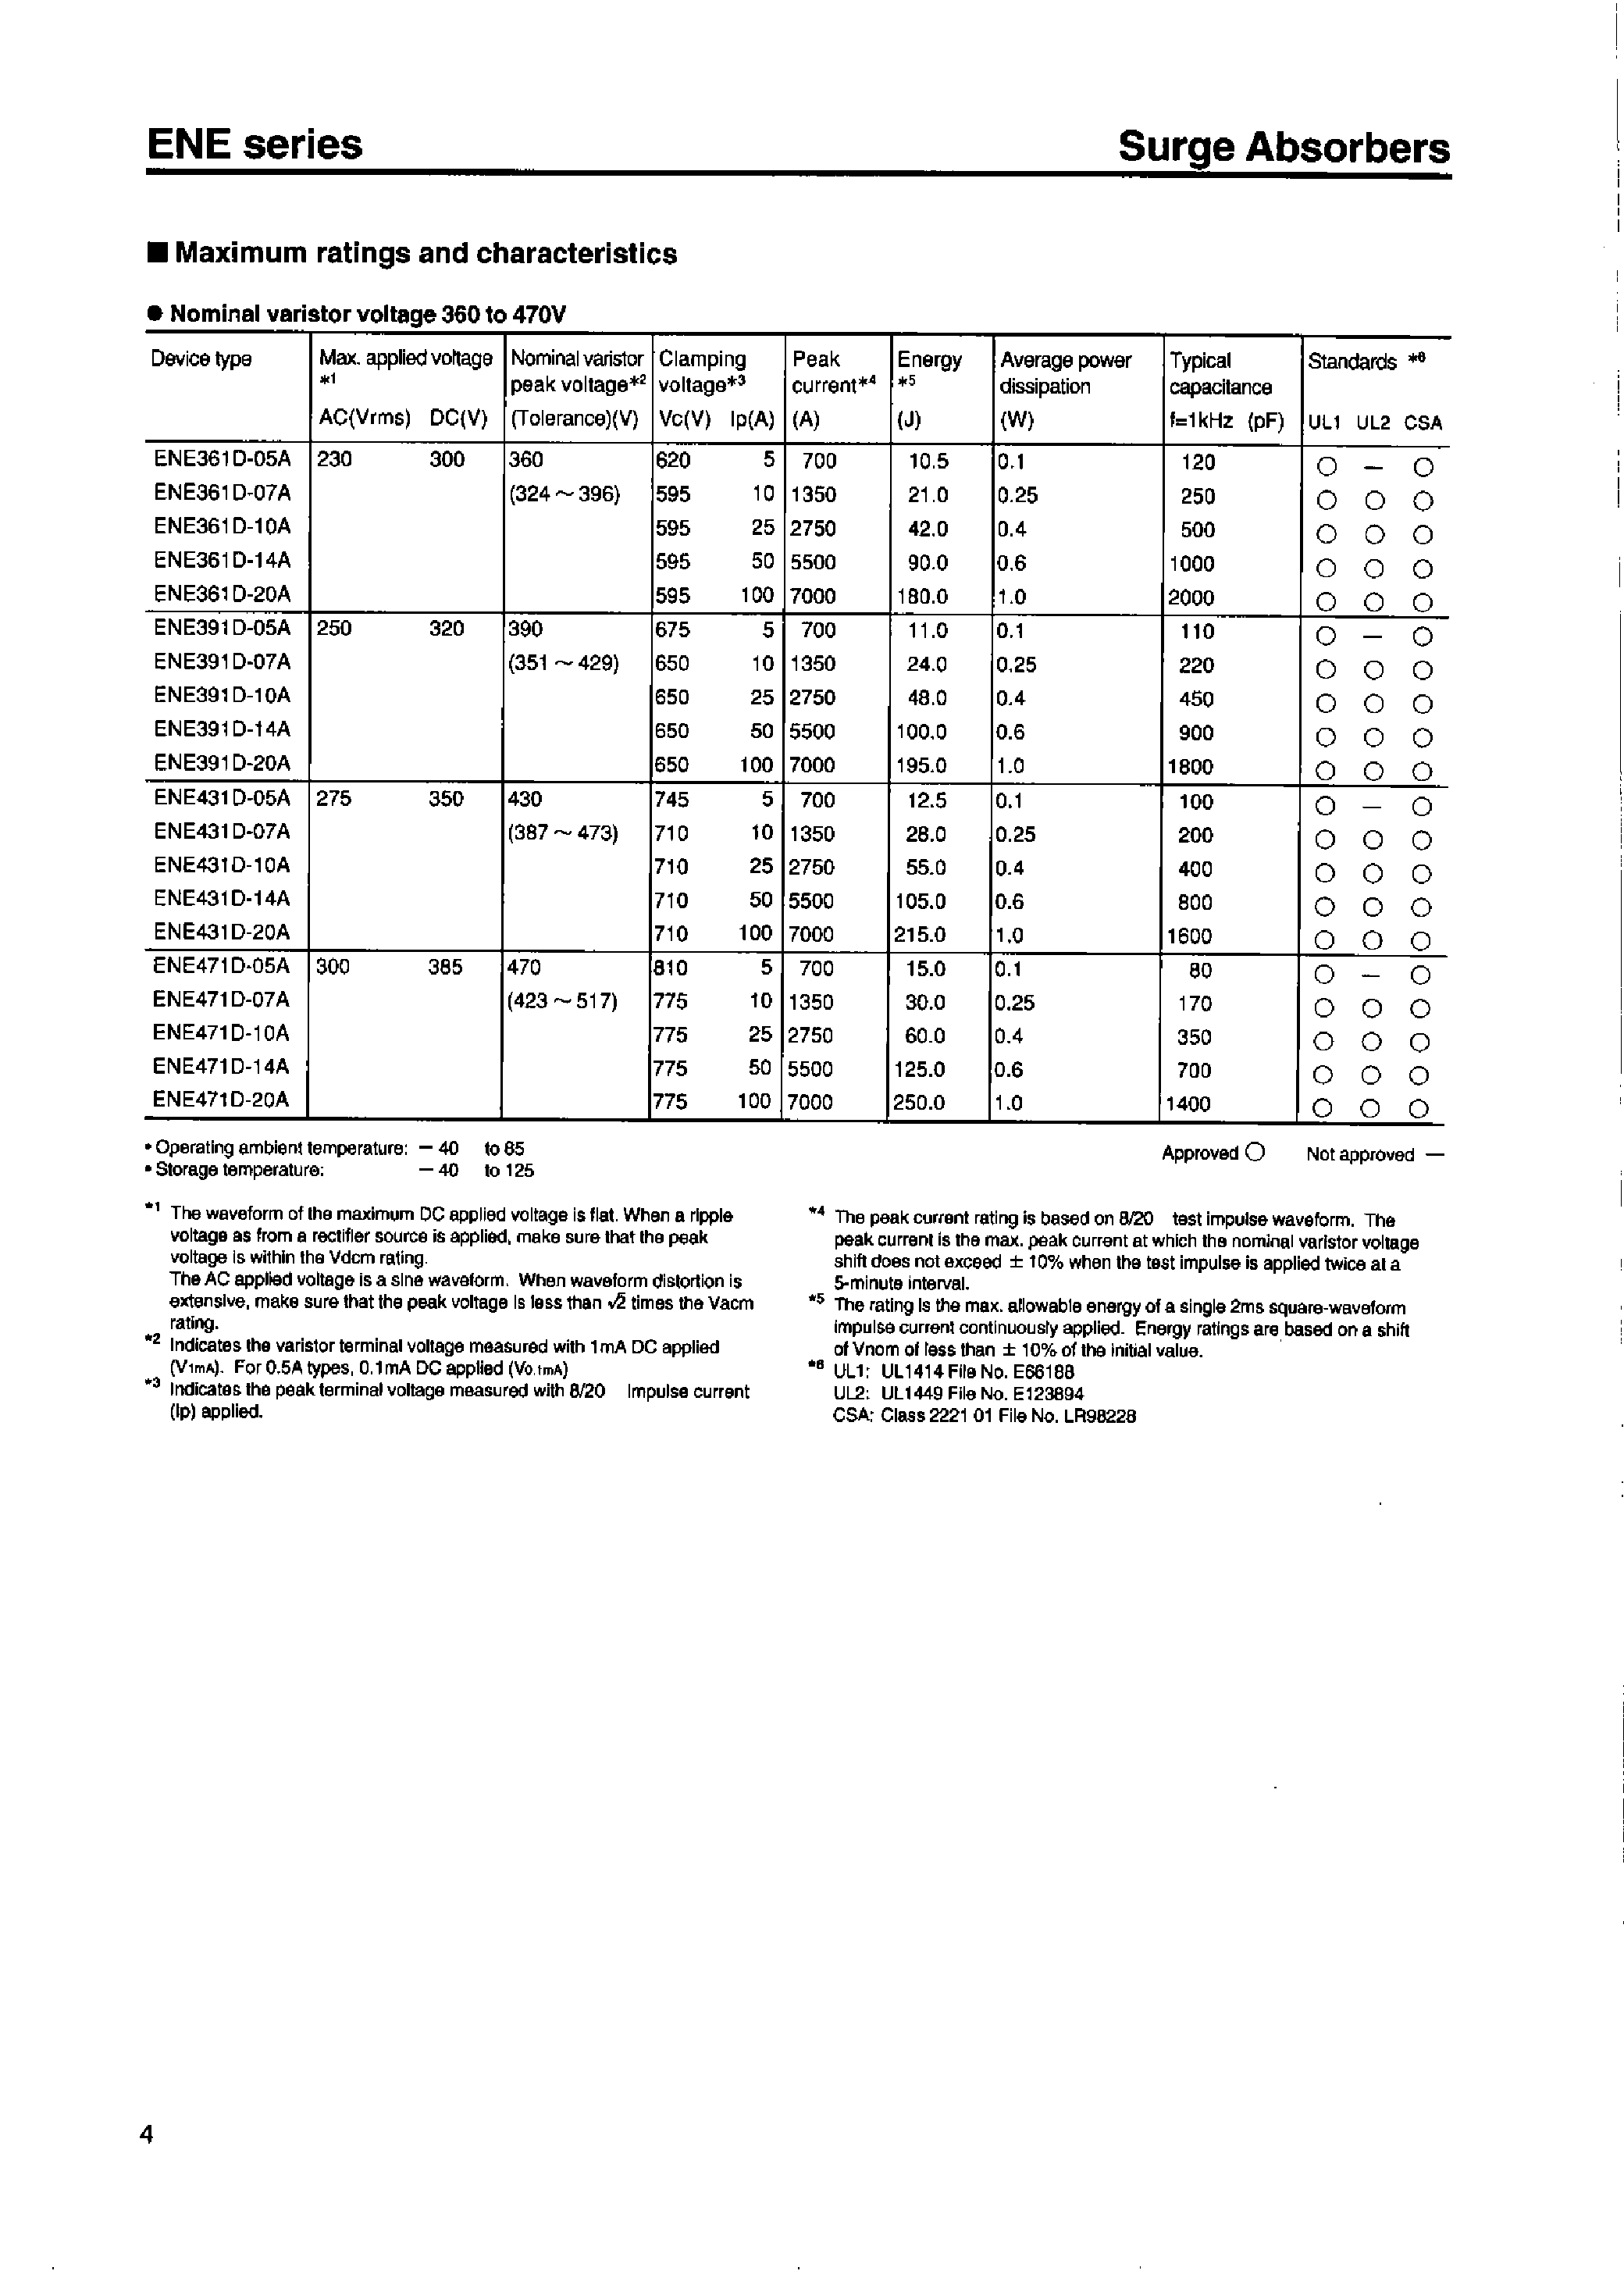 Datasheet EN271D-14A - Z-TRAP ENE(Nominal varistor voltage 200 to 470V page 2